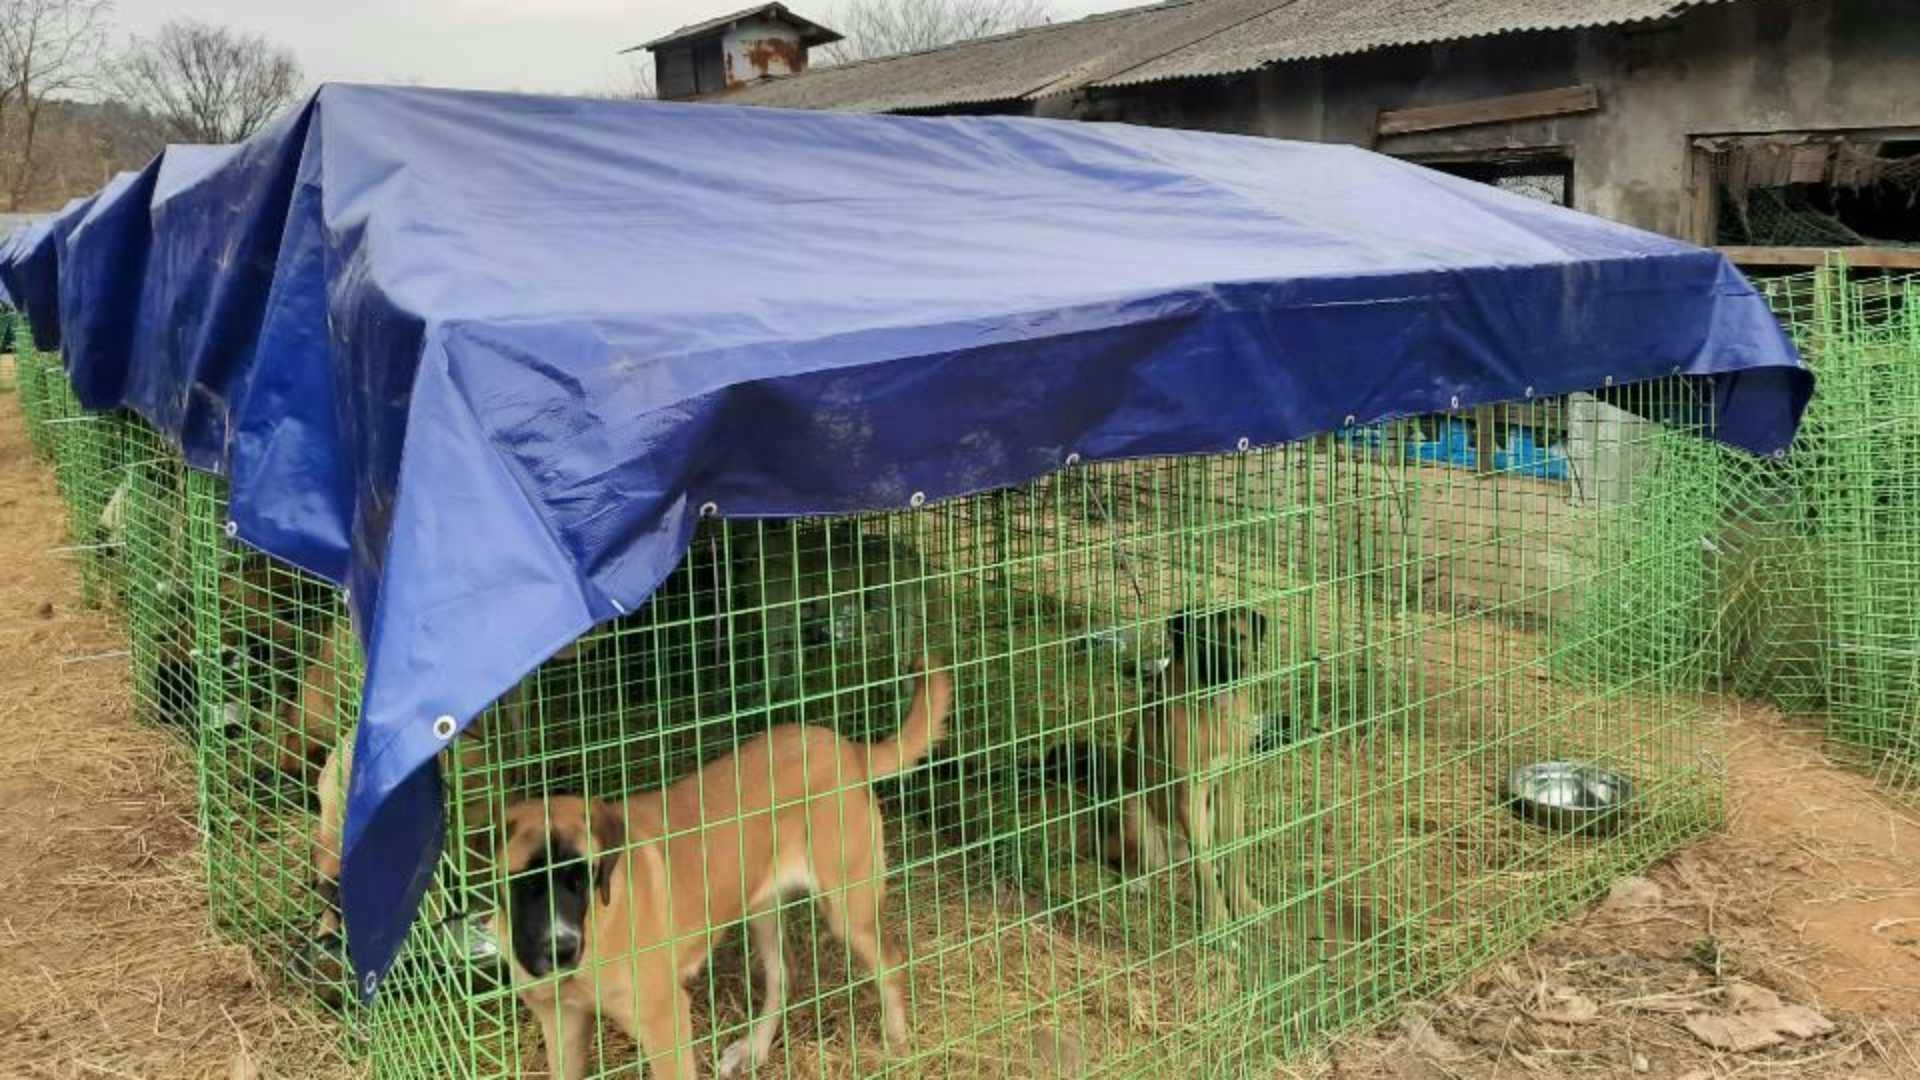 초록색 펜스로 만든 장 안에 개들이 있고, 펜스 위에는 개들이 비를 맞지 않도록 파란색 천막을 올렸다. 사진 제공 롯데목장 개 살리기 시민모임.